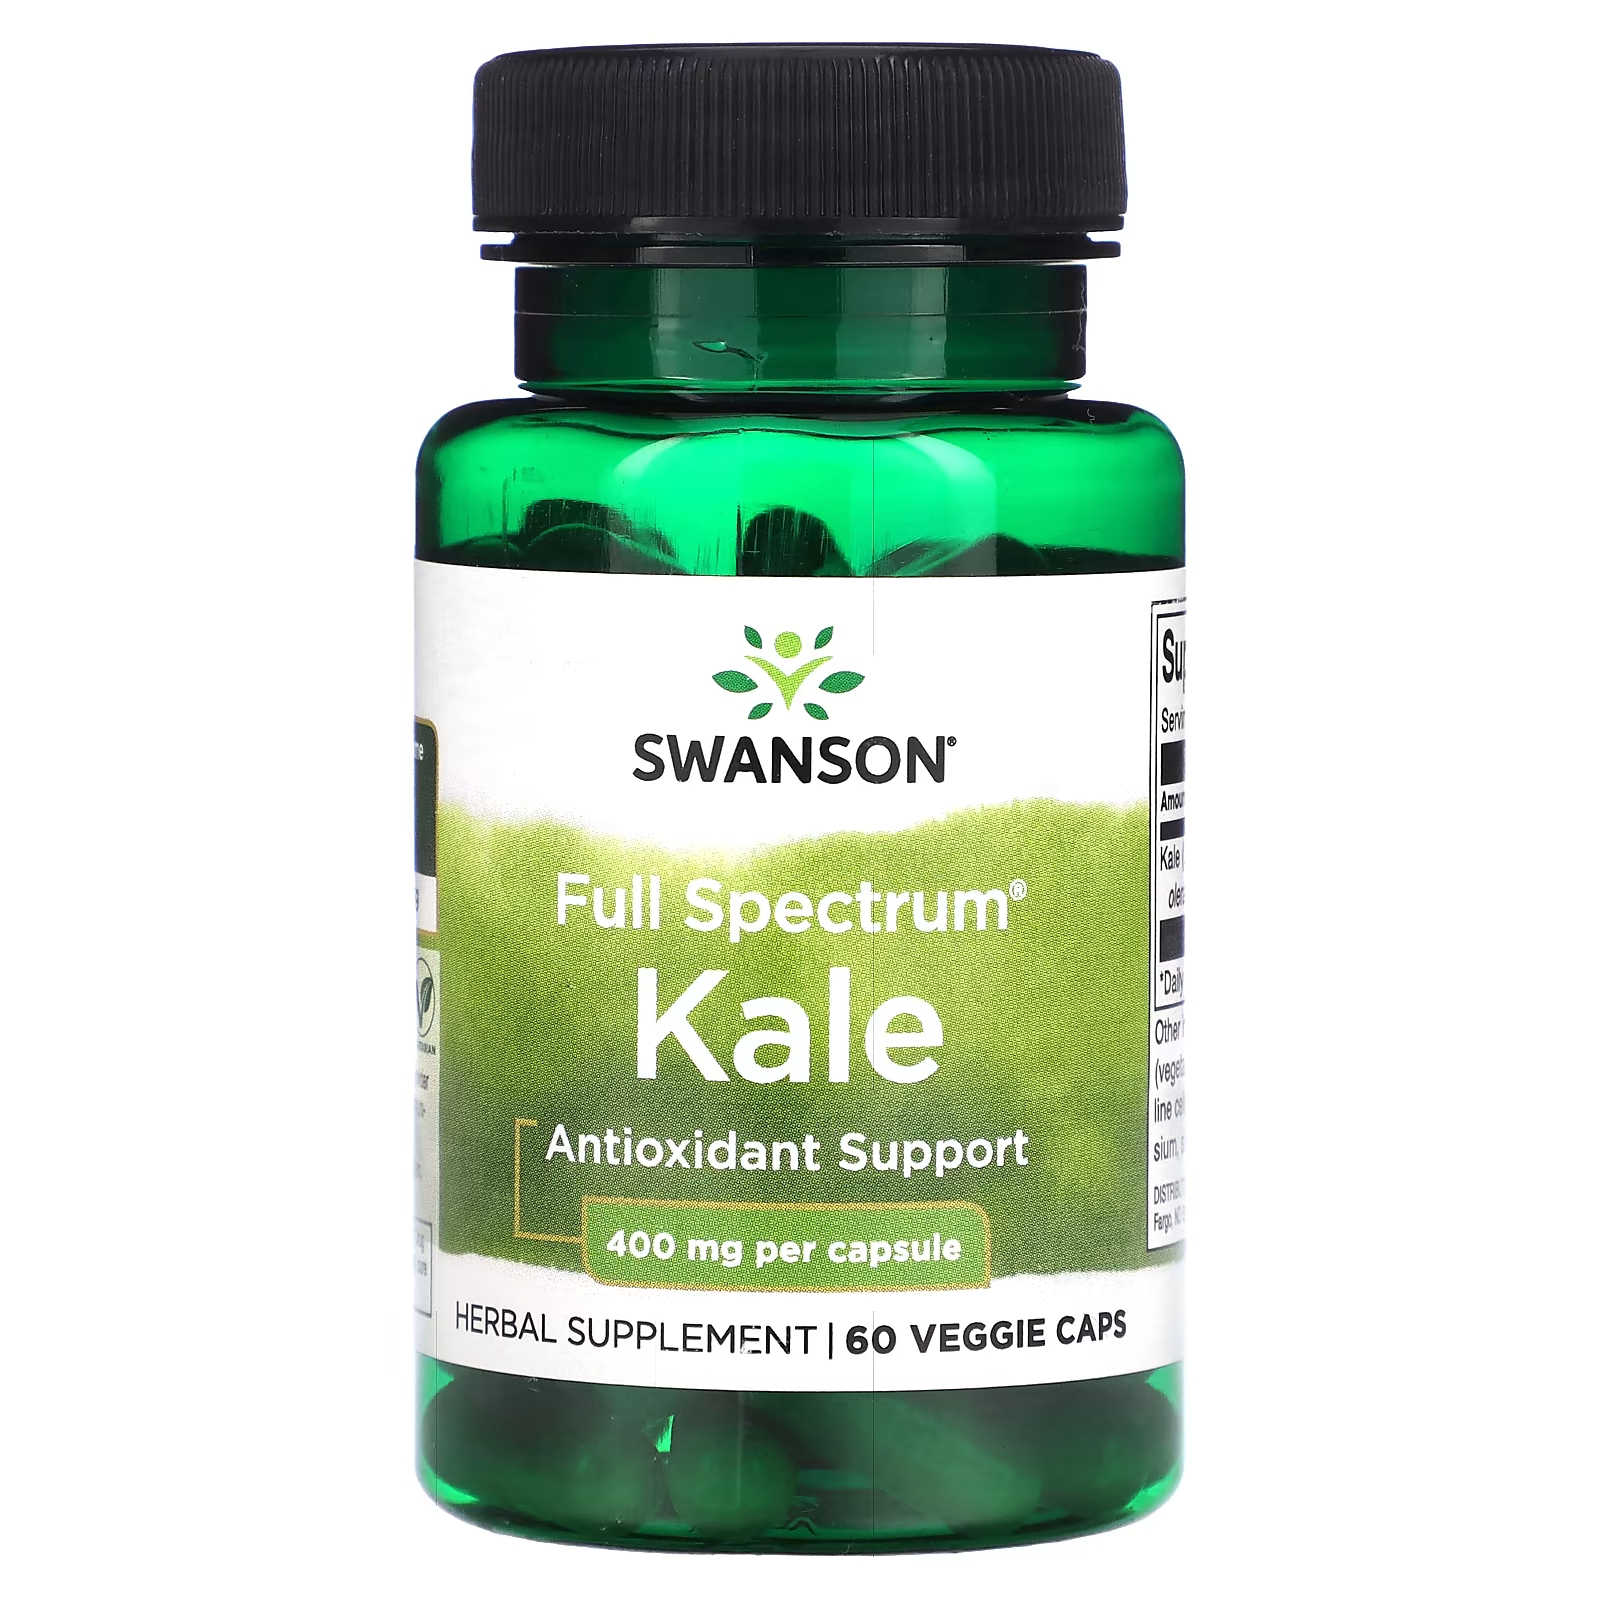 Пищевая добавка Swanson Кале полного спектра действия 400 мг, 60 вегетарианских капсул пищевая добавка swanson кора магнолии полного спектра действия 400 мг 60 капсул